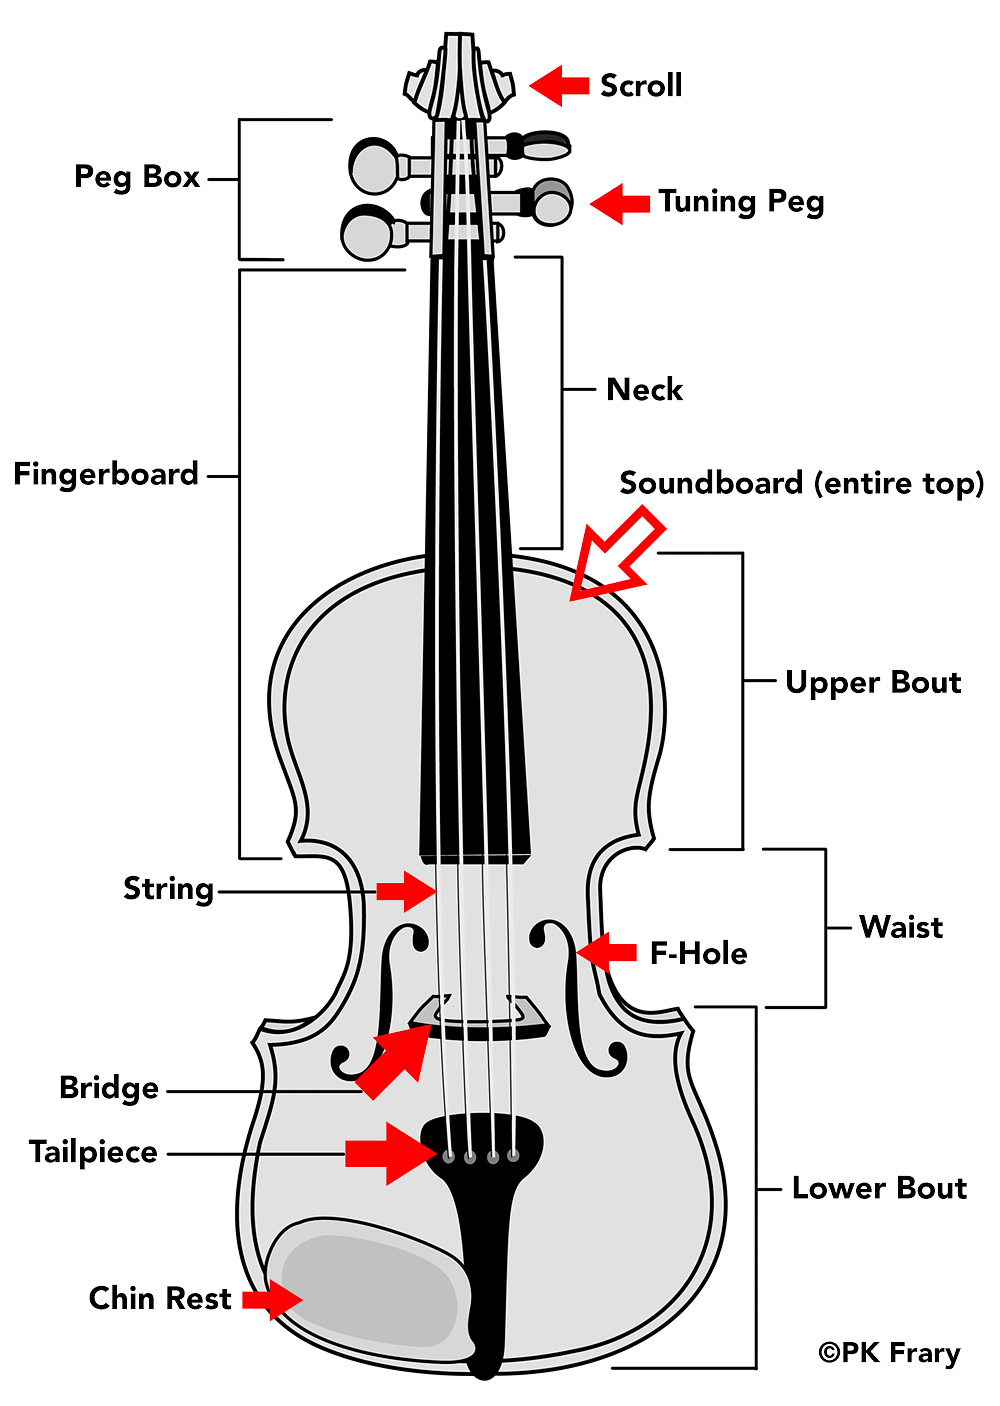 peter's Violin